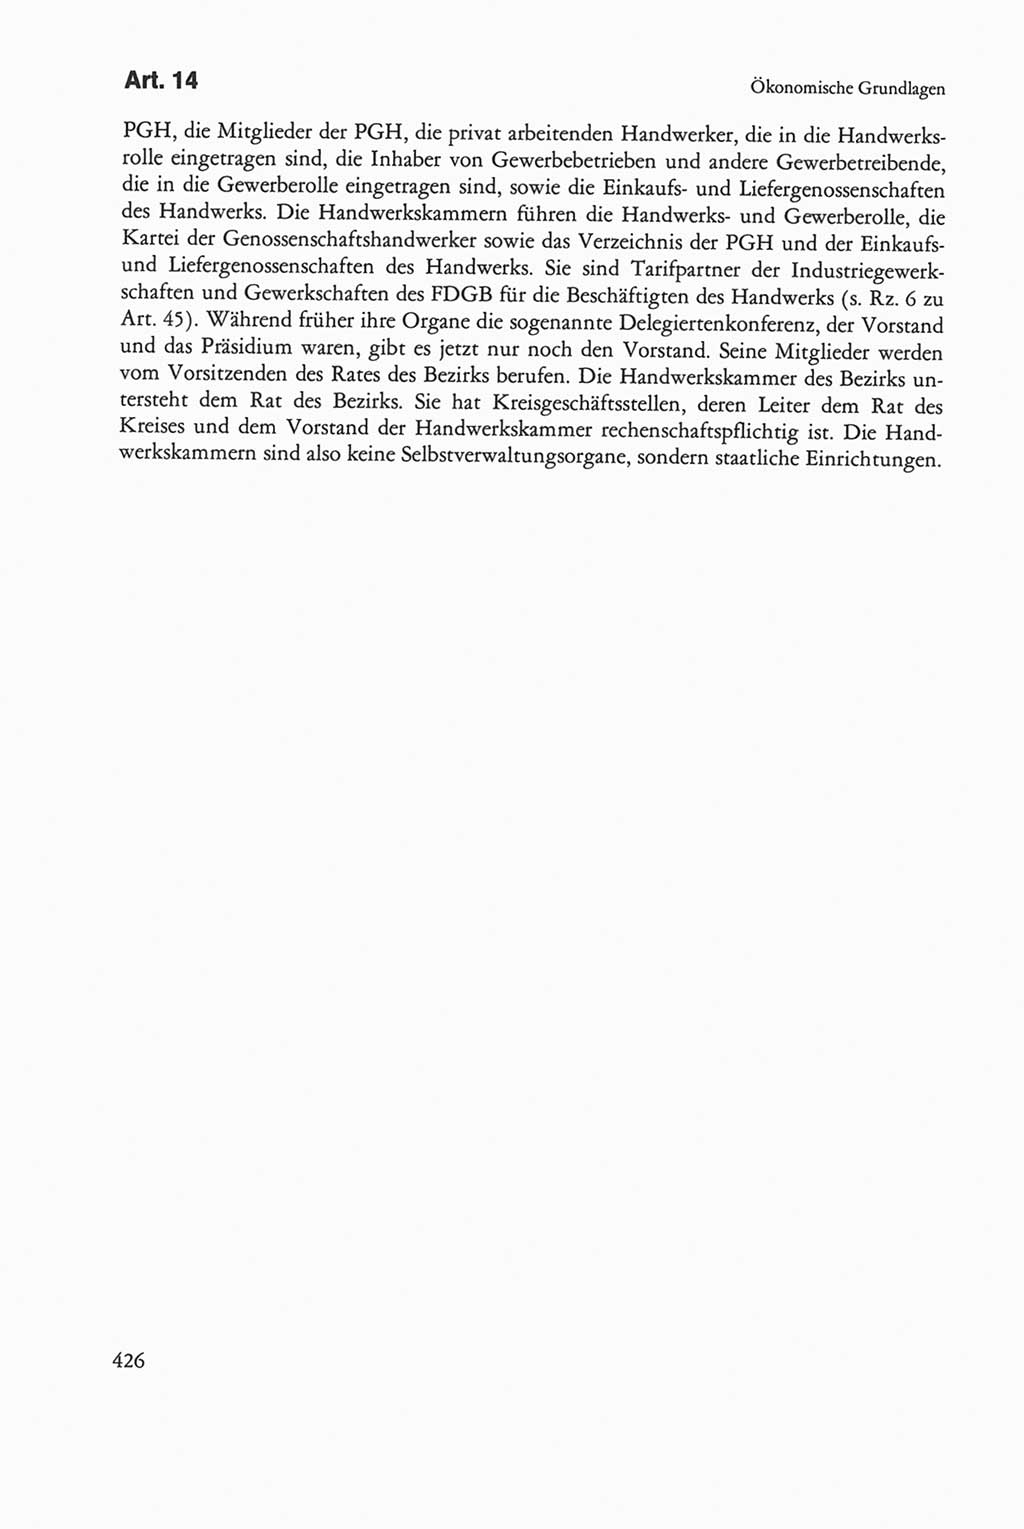 Die sozialistische Verfassung der Deutschen Demokratischen Republik (DDR), Kommentar mit einem Nachtrag 1997, Seite 426 (Soz. Verf. DDR Komm. Nachtr. 1997, S. 426)